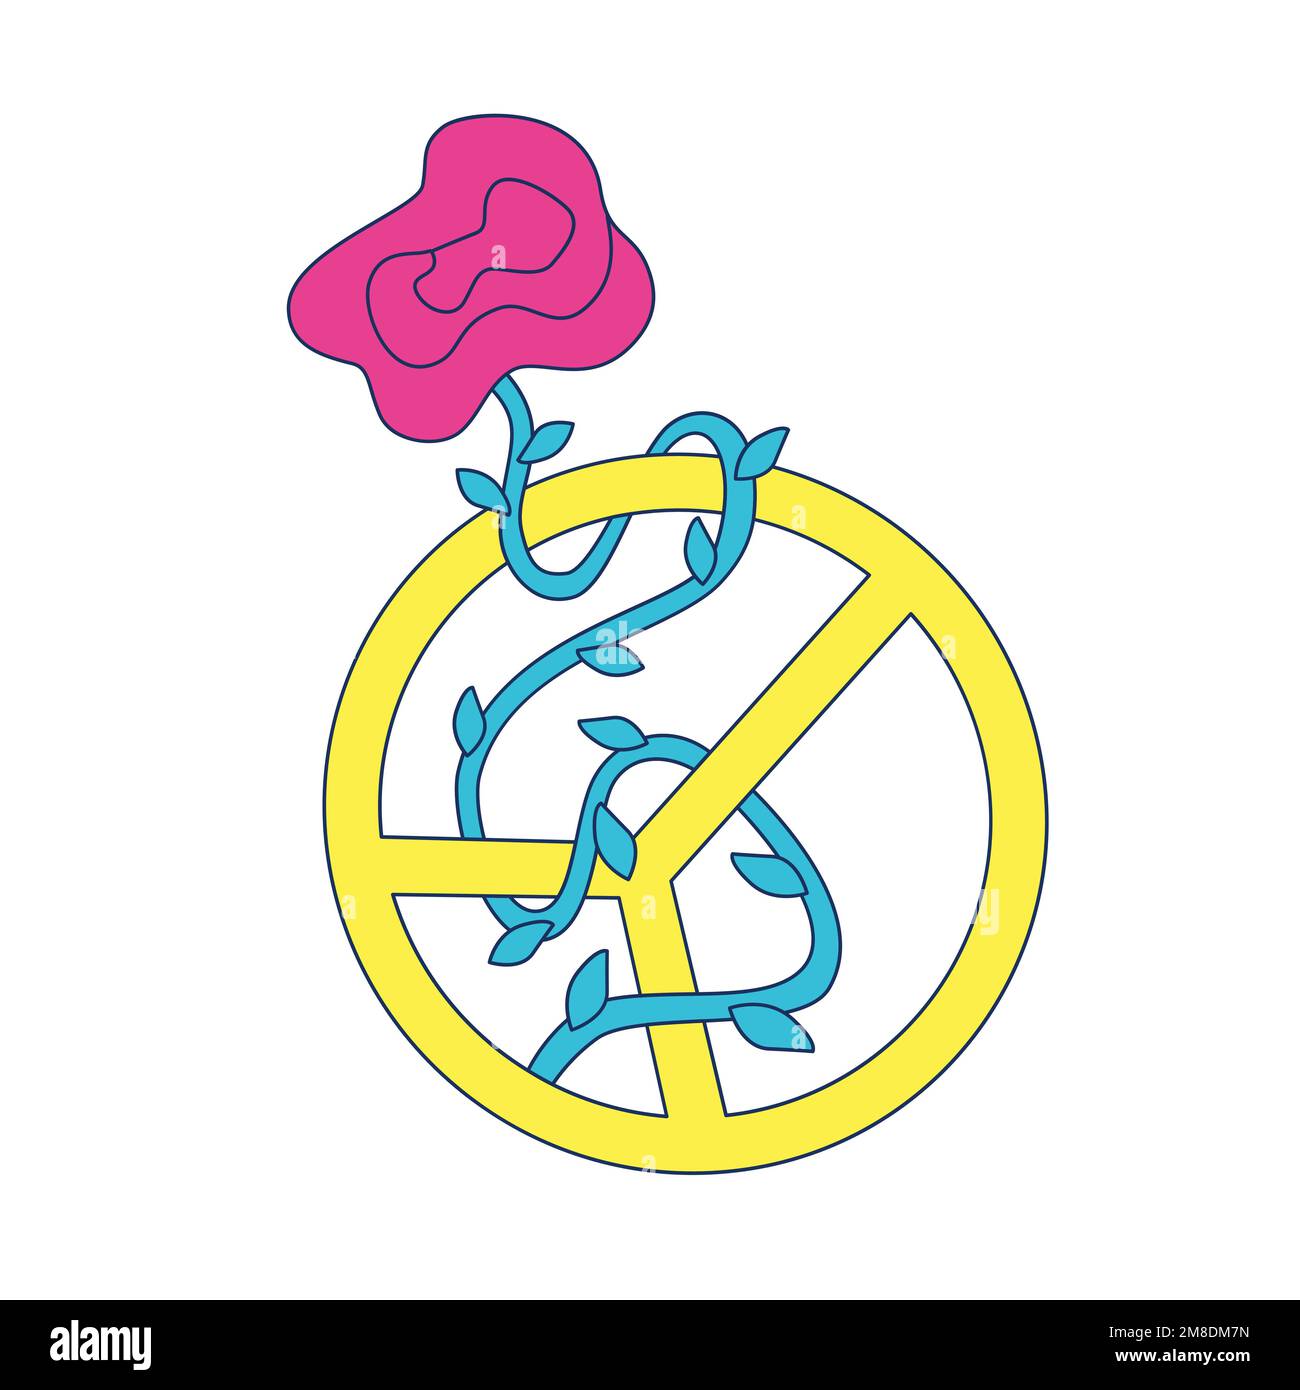 Symbole de la paix accompagné d'une rose. Signe de paix et fleur en fleur. Style rétro hippie Y2K couleurs vives. 1970 groovy vintage. Illustration vectorielle. Illustration de Vecteur